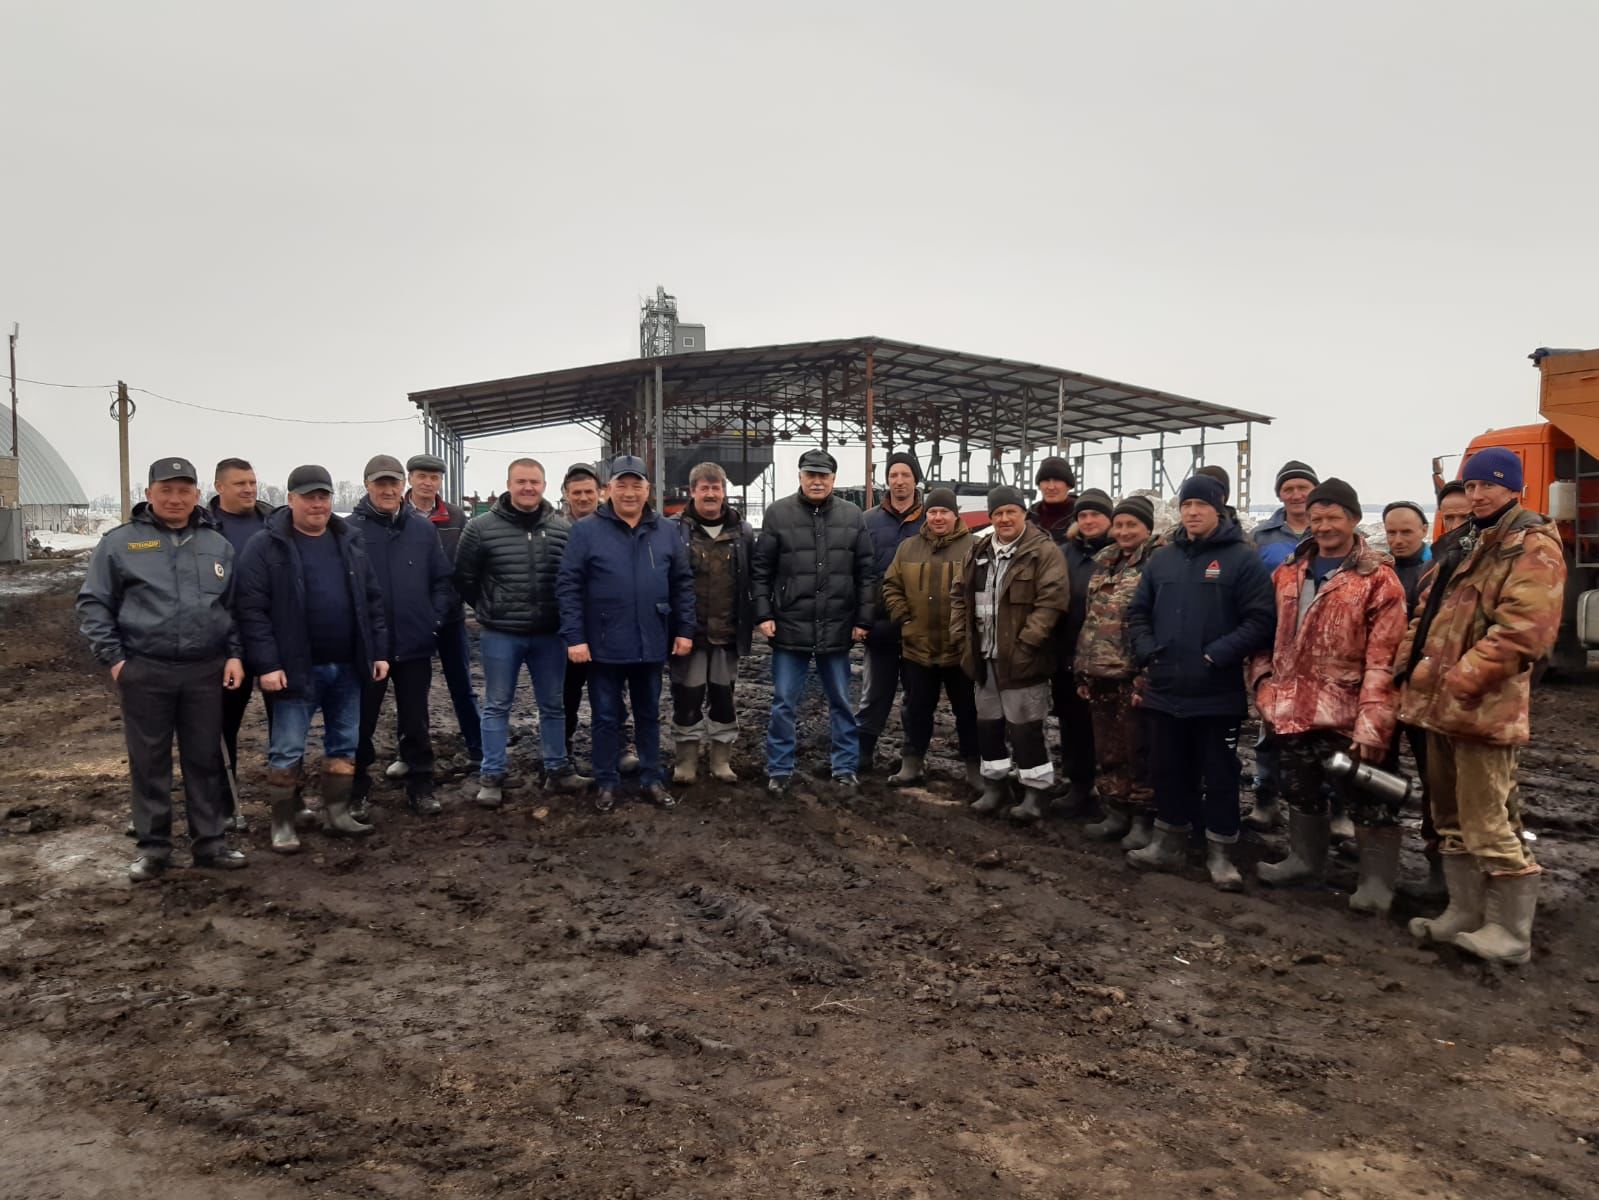 В Спасском районе прошёл конкурс по готовности сельхозтехники к весенне-полевым работам